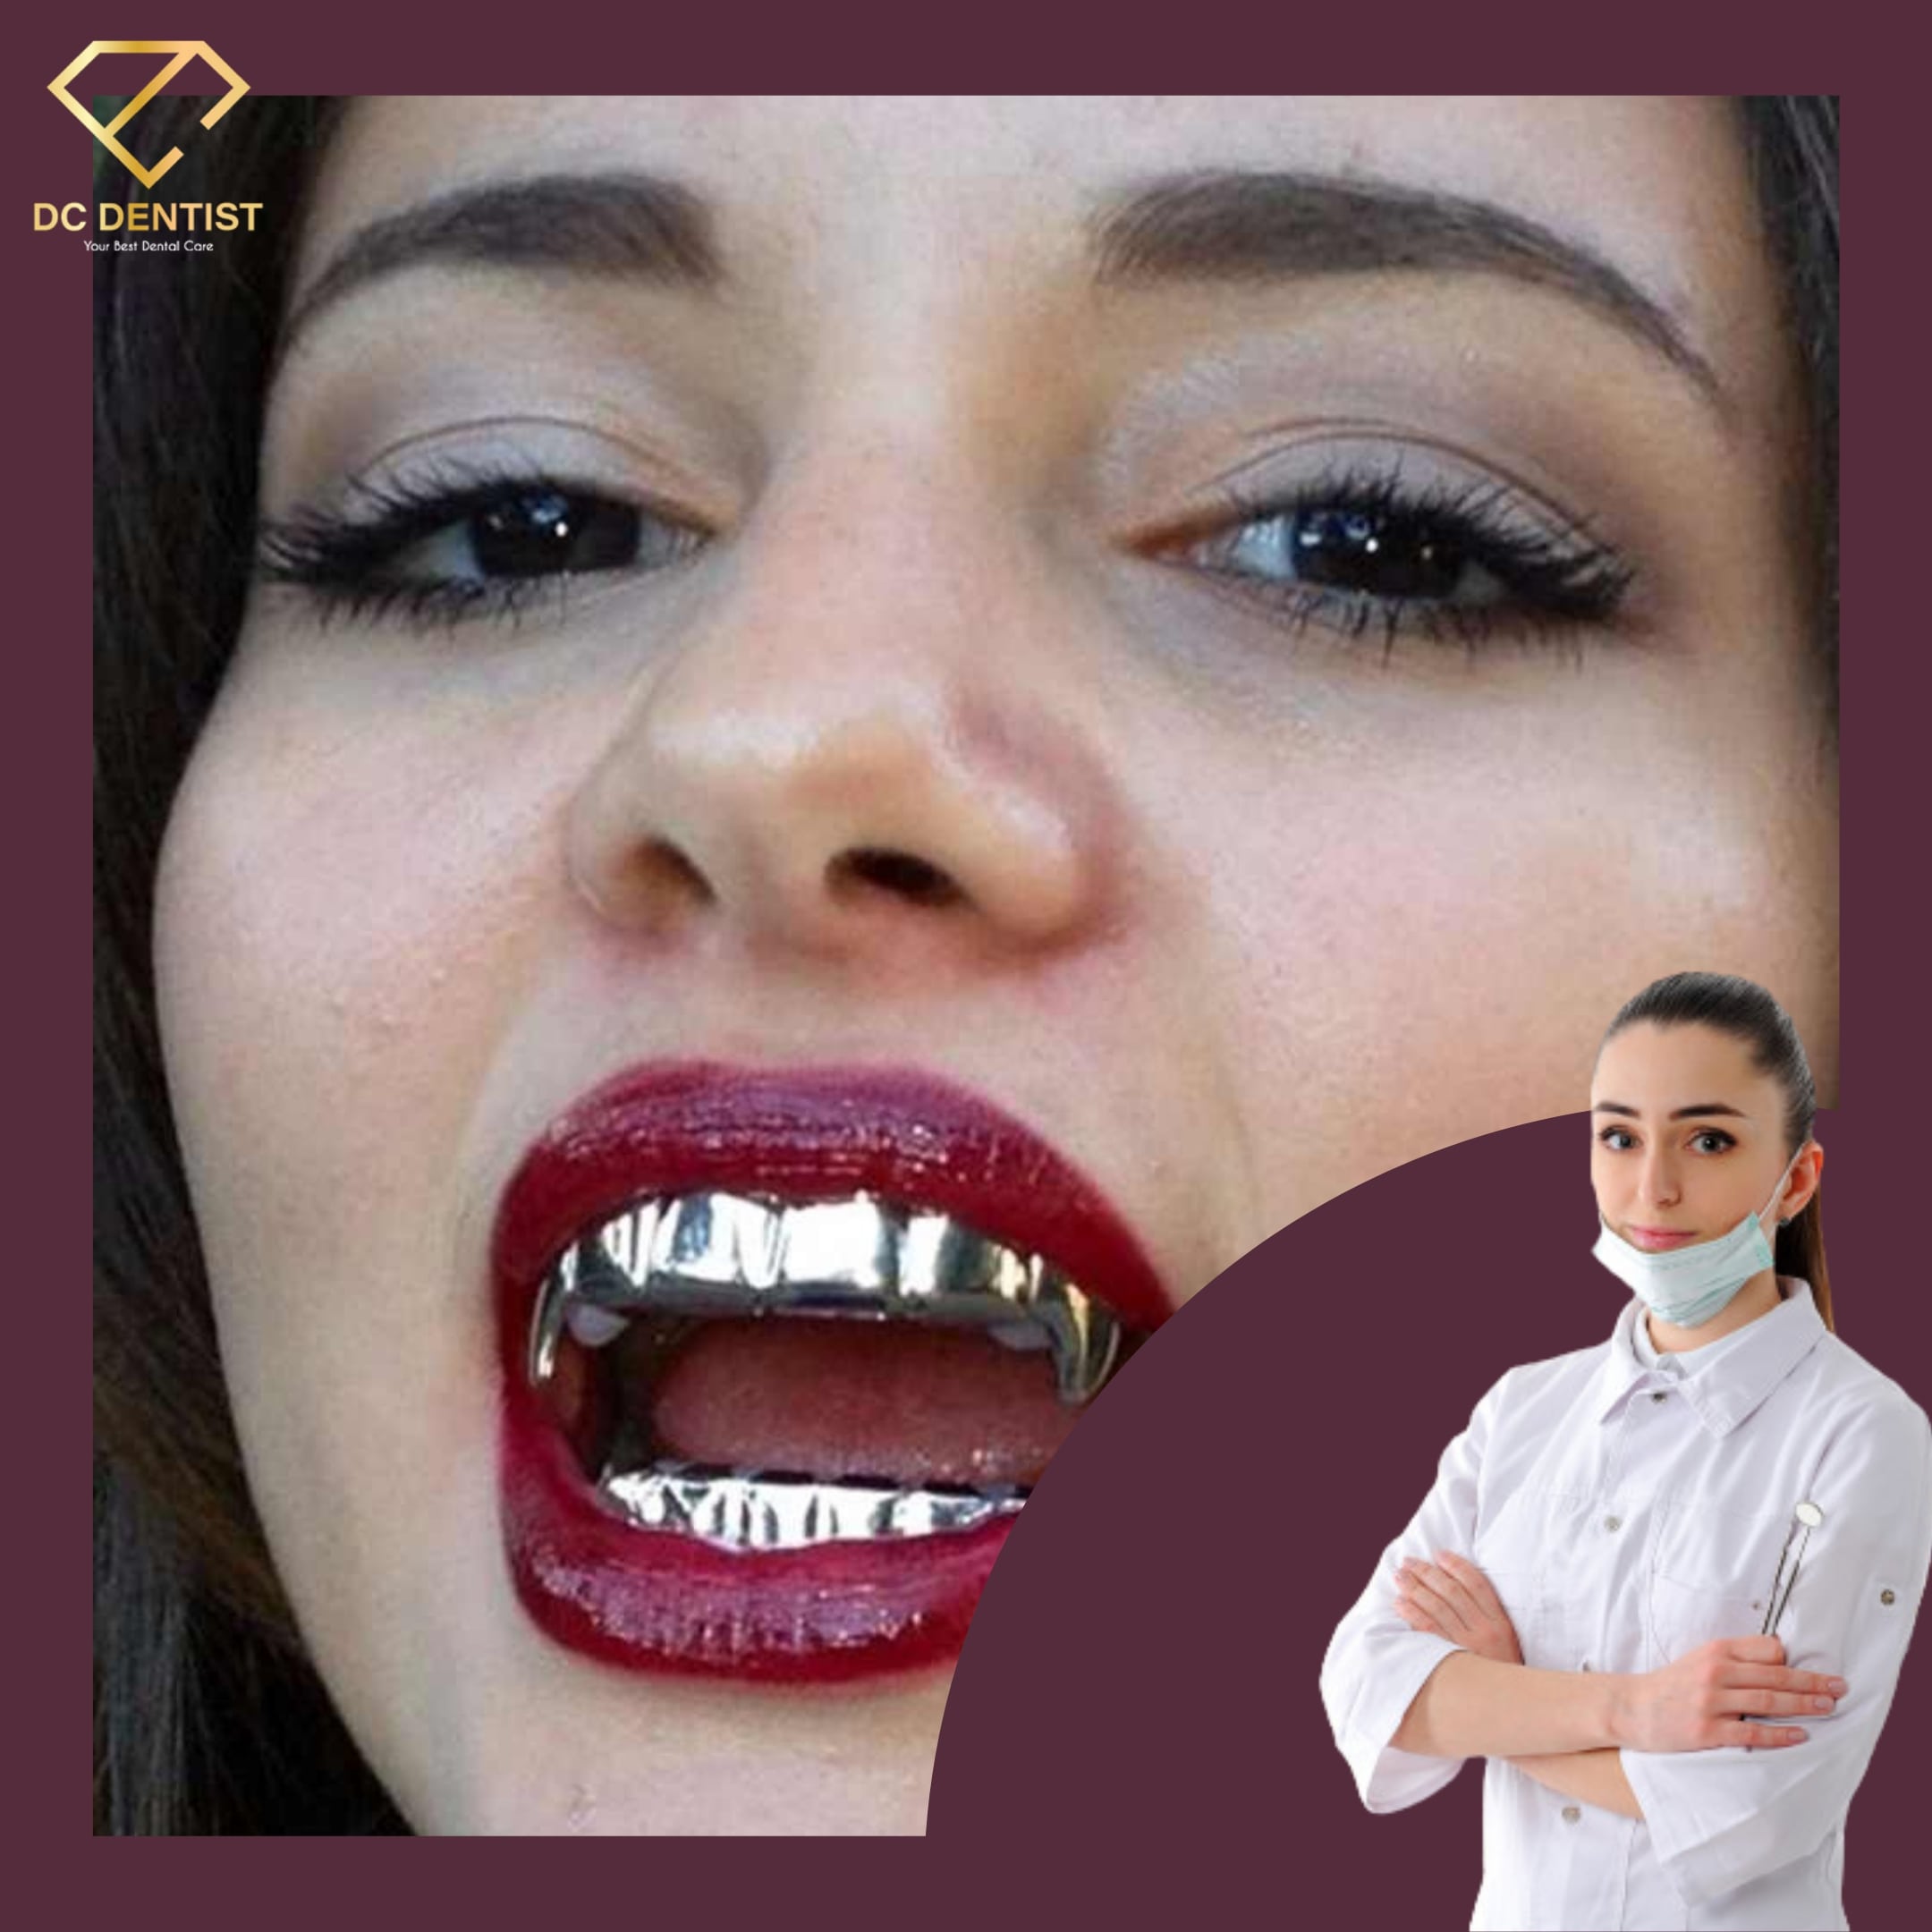 bọc răng bằng bạc giá bao nhiêu, bọc răng bạc, làm răng bọc bạc, làm răng bạc, bọc răng bằng bạc, mạ răng bạc, Giá bọc răng bạc